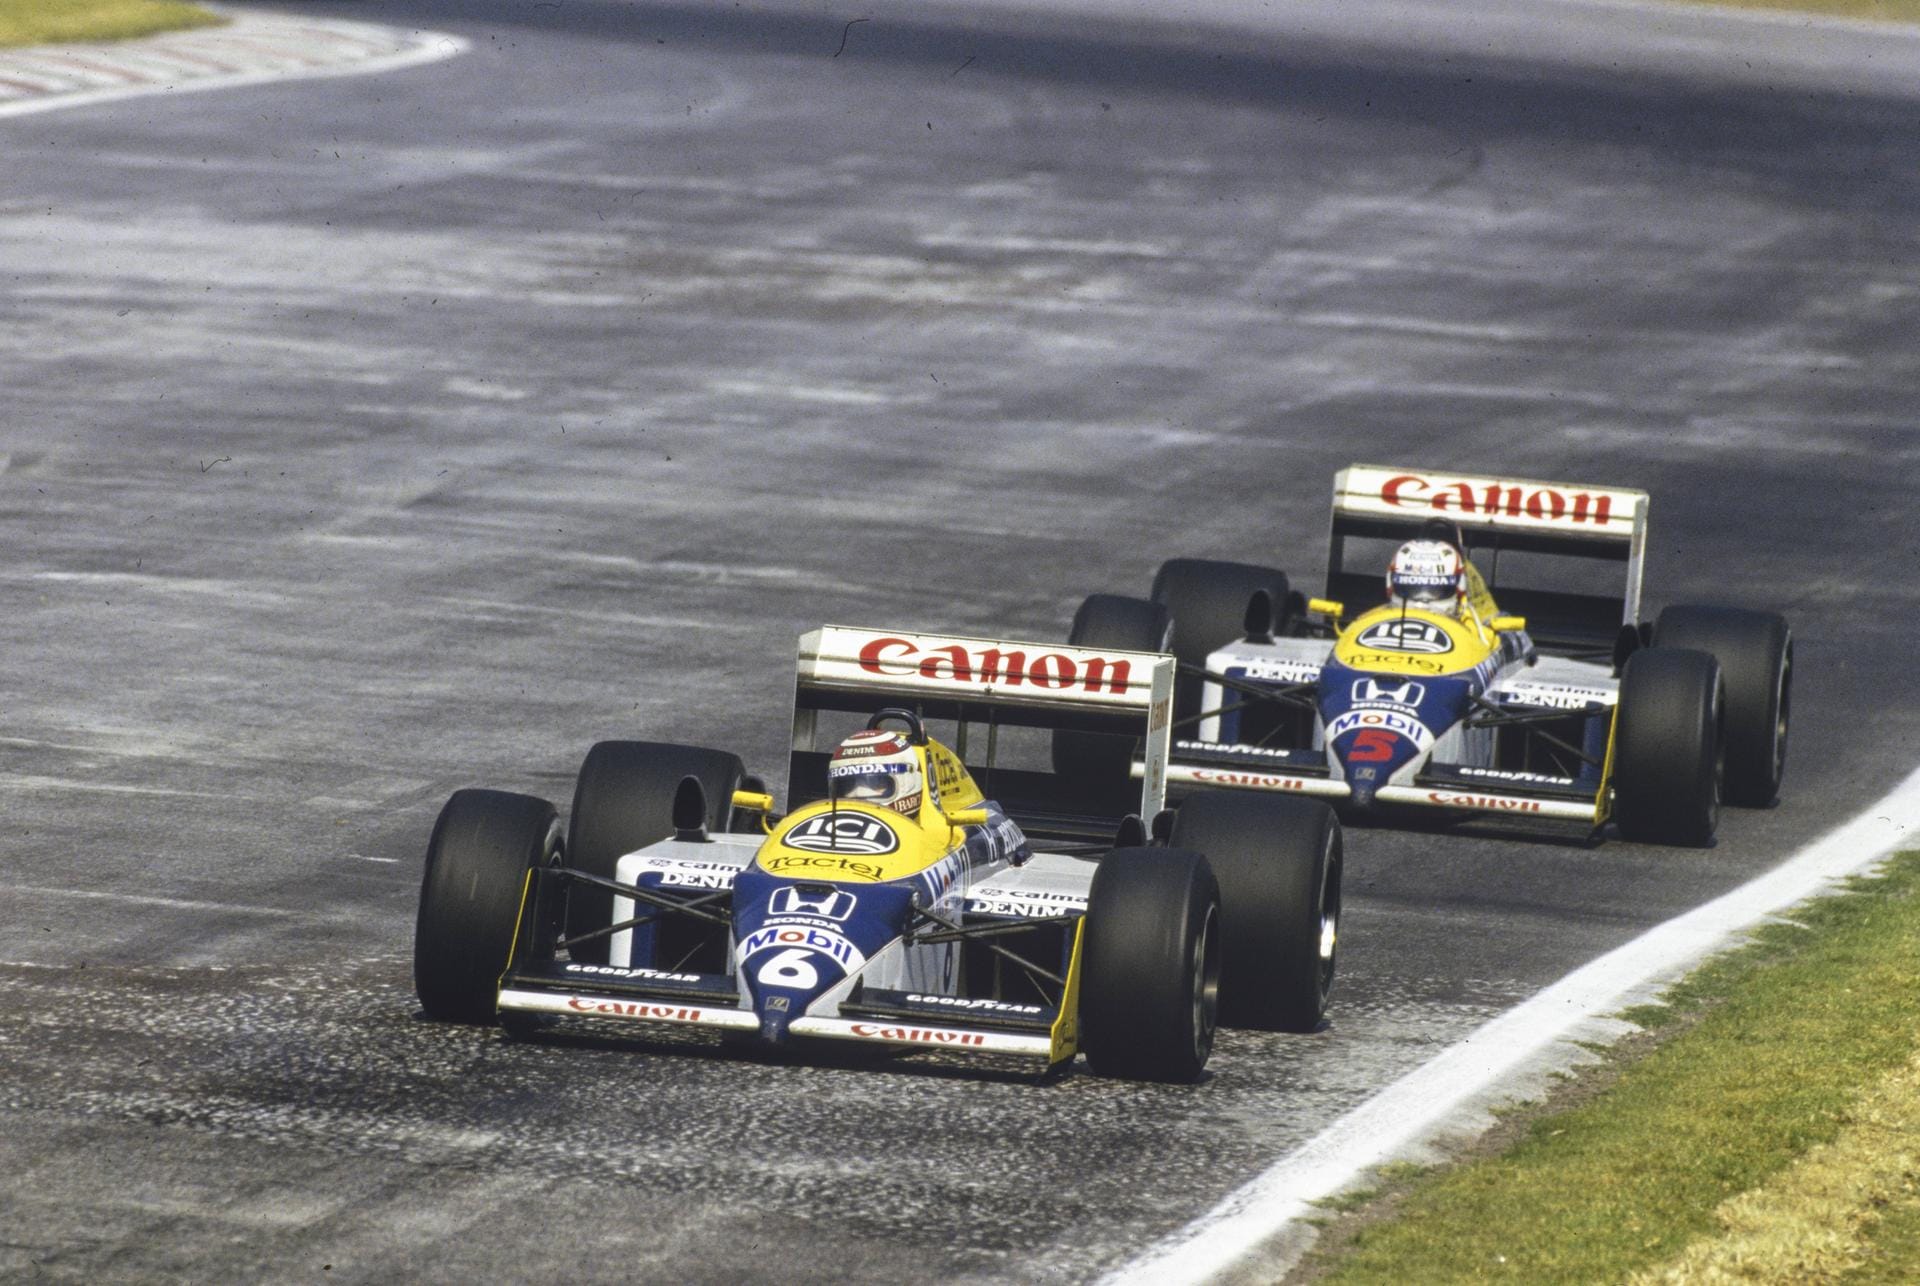 Nelson Piquet und Nigel Mansell (Williams): Auf der Strecke gehen sich der Brasilianer und der Brite meistens aus dem Weg, aber in der Öffentlichkeit kultivieren sie ihre gegenseitige Abneigung und versuchen gar nicht erst, ihre private Fehde zu verheimlichen.